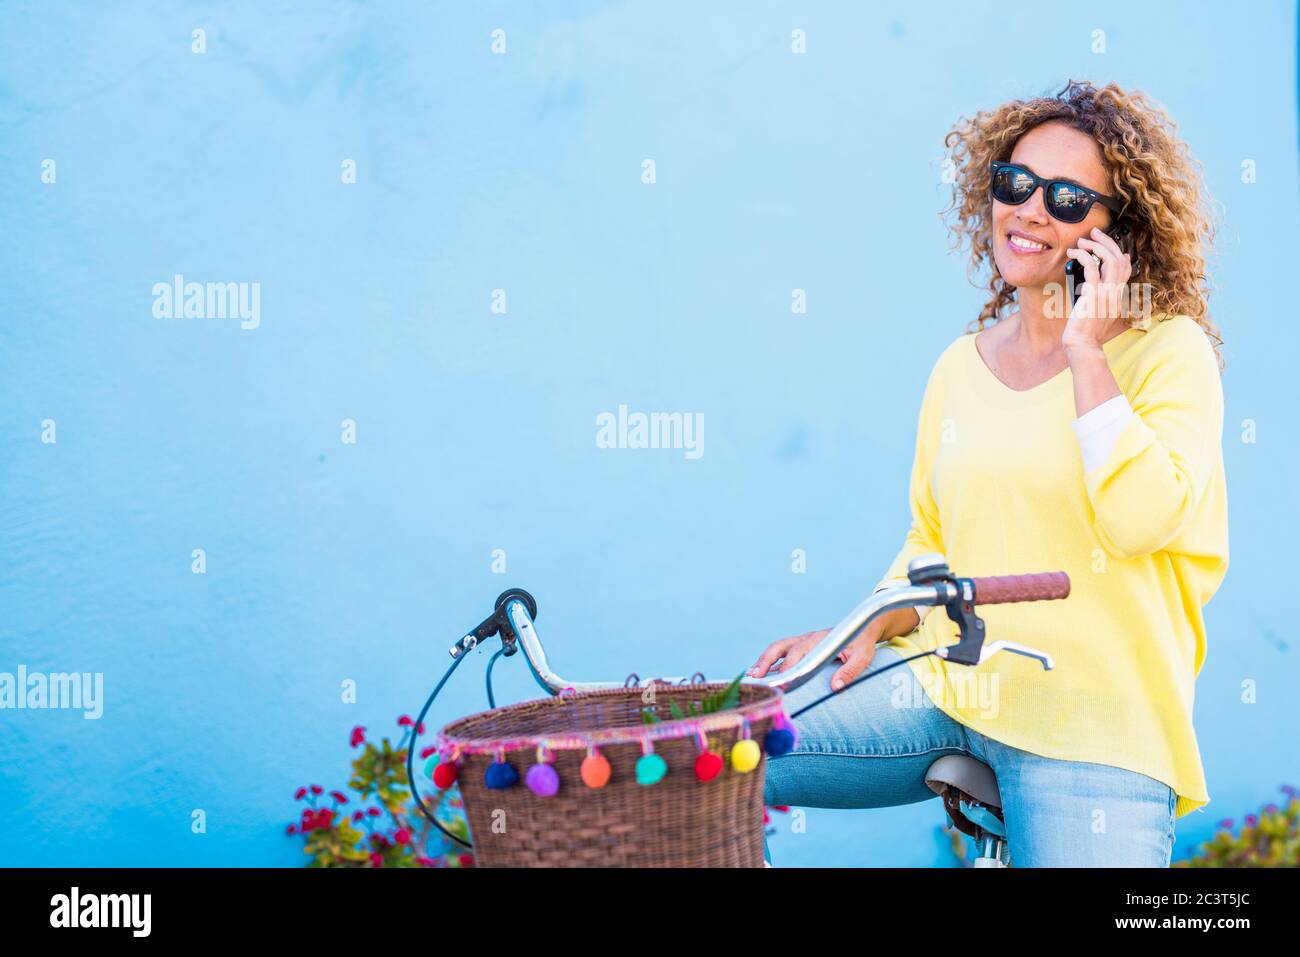 Schöne mittlere Alter gesunde junge Frau tun einen Anruf Setzen Sie sich auf einem Vintage farbigen Happy Bike und blauen Hintergrund Wand - Farben und glückliche Menschen Stockfoto